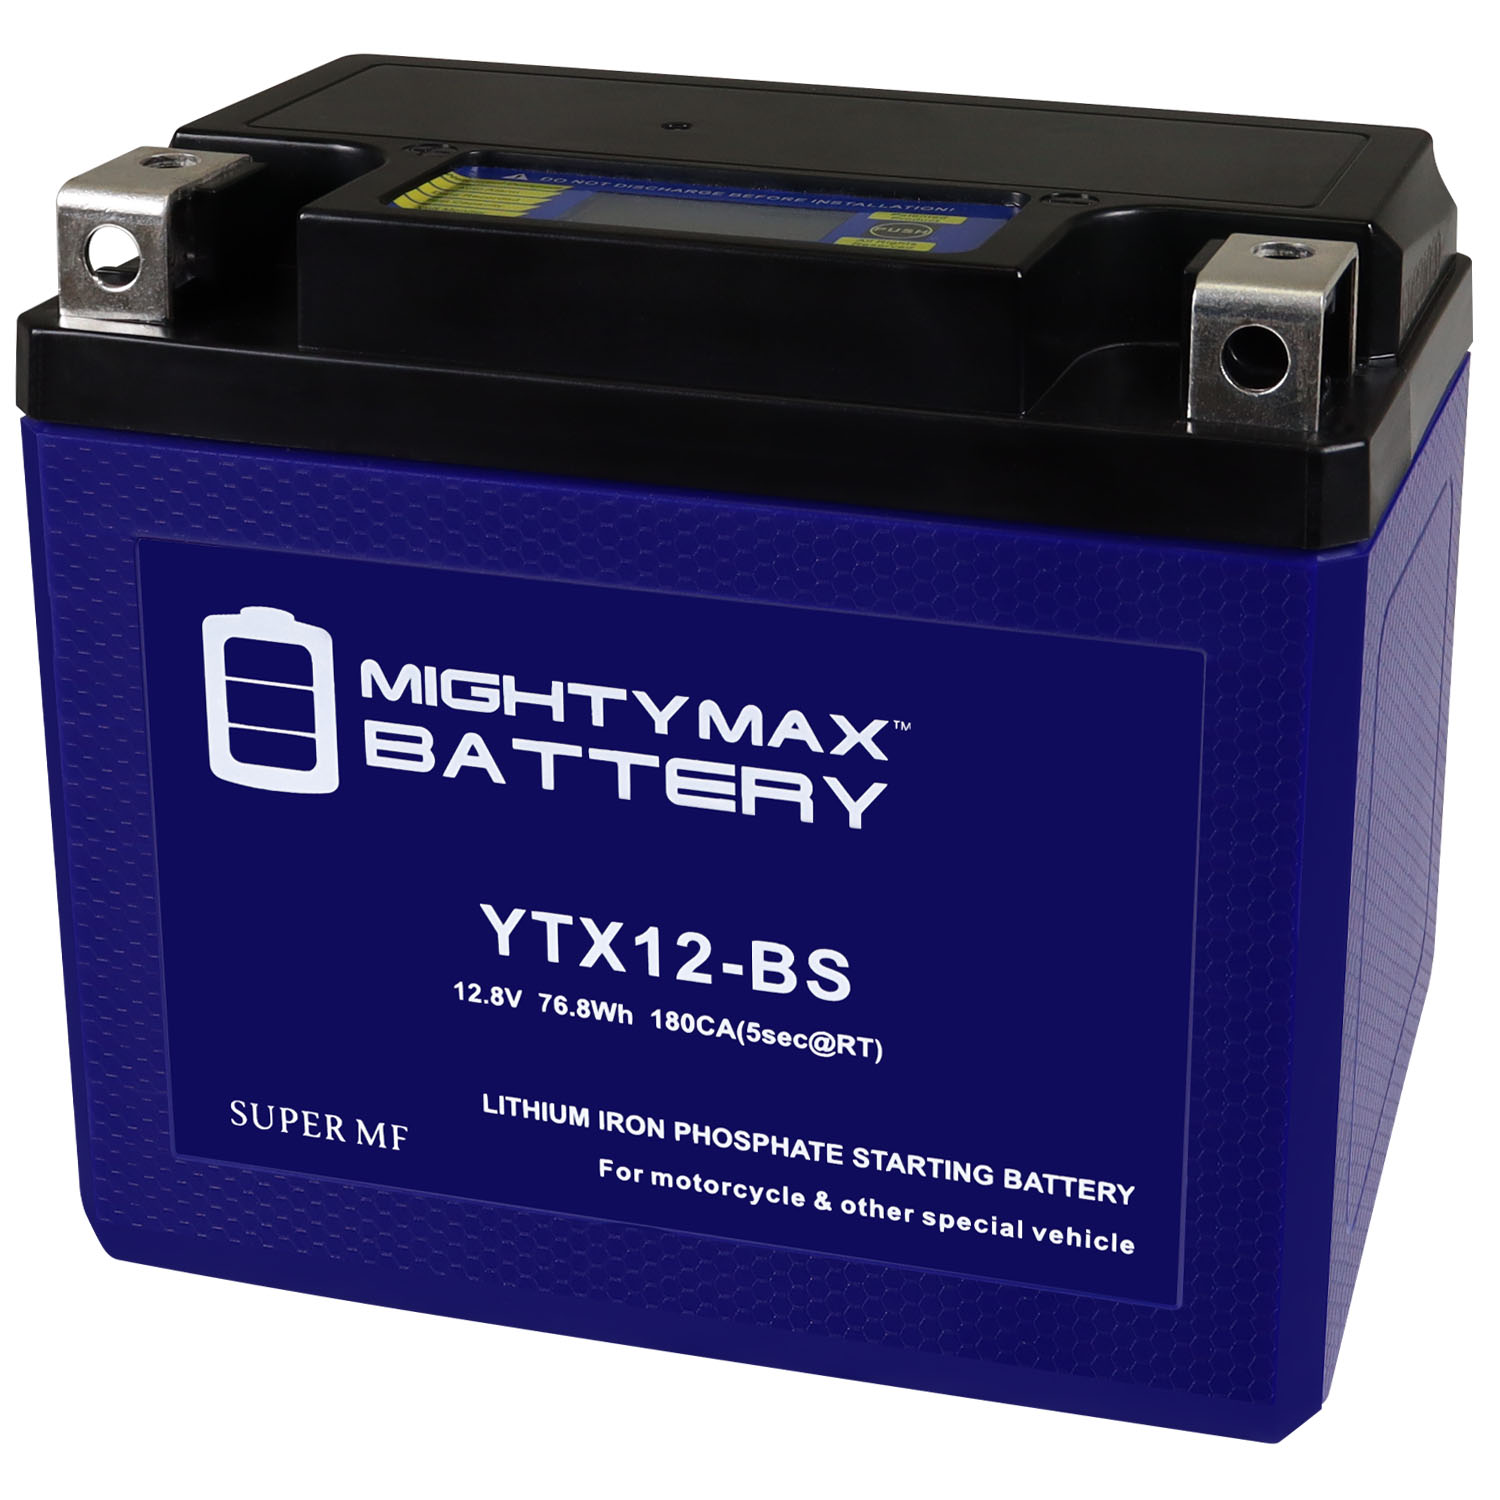 Batería recargable litio (Li-Ion) 12V 3000mAh YSD12300 [ysd12300] - 29.75€  - SECURAME